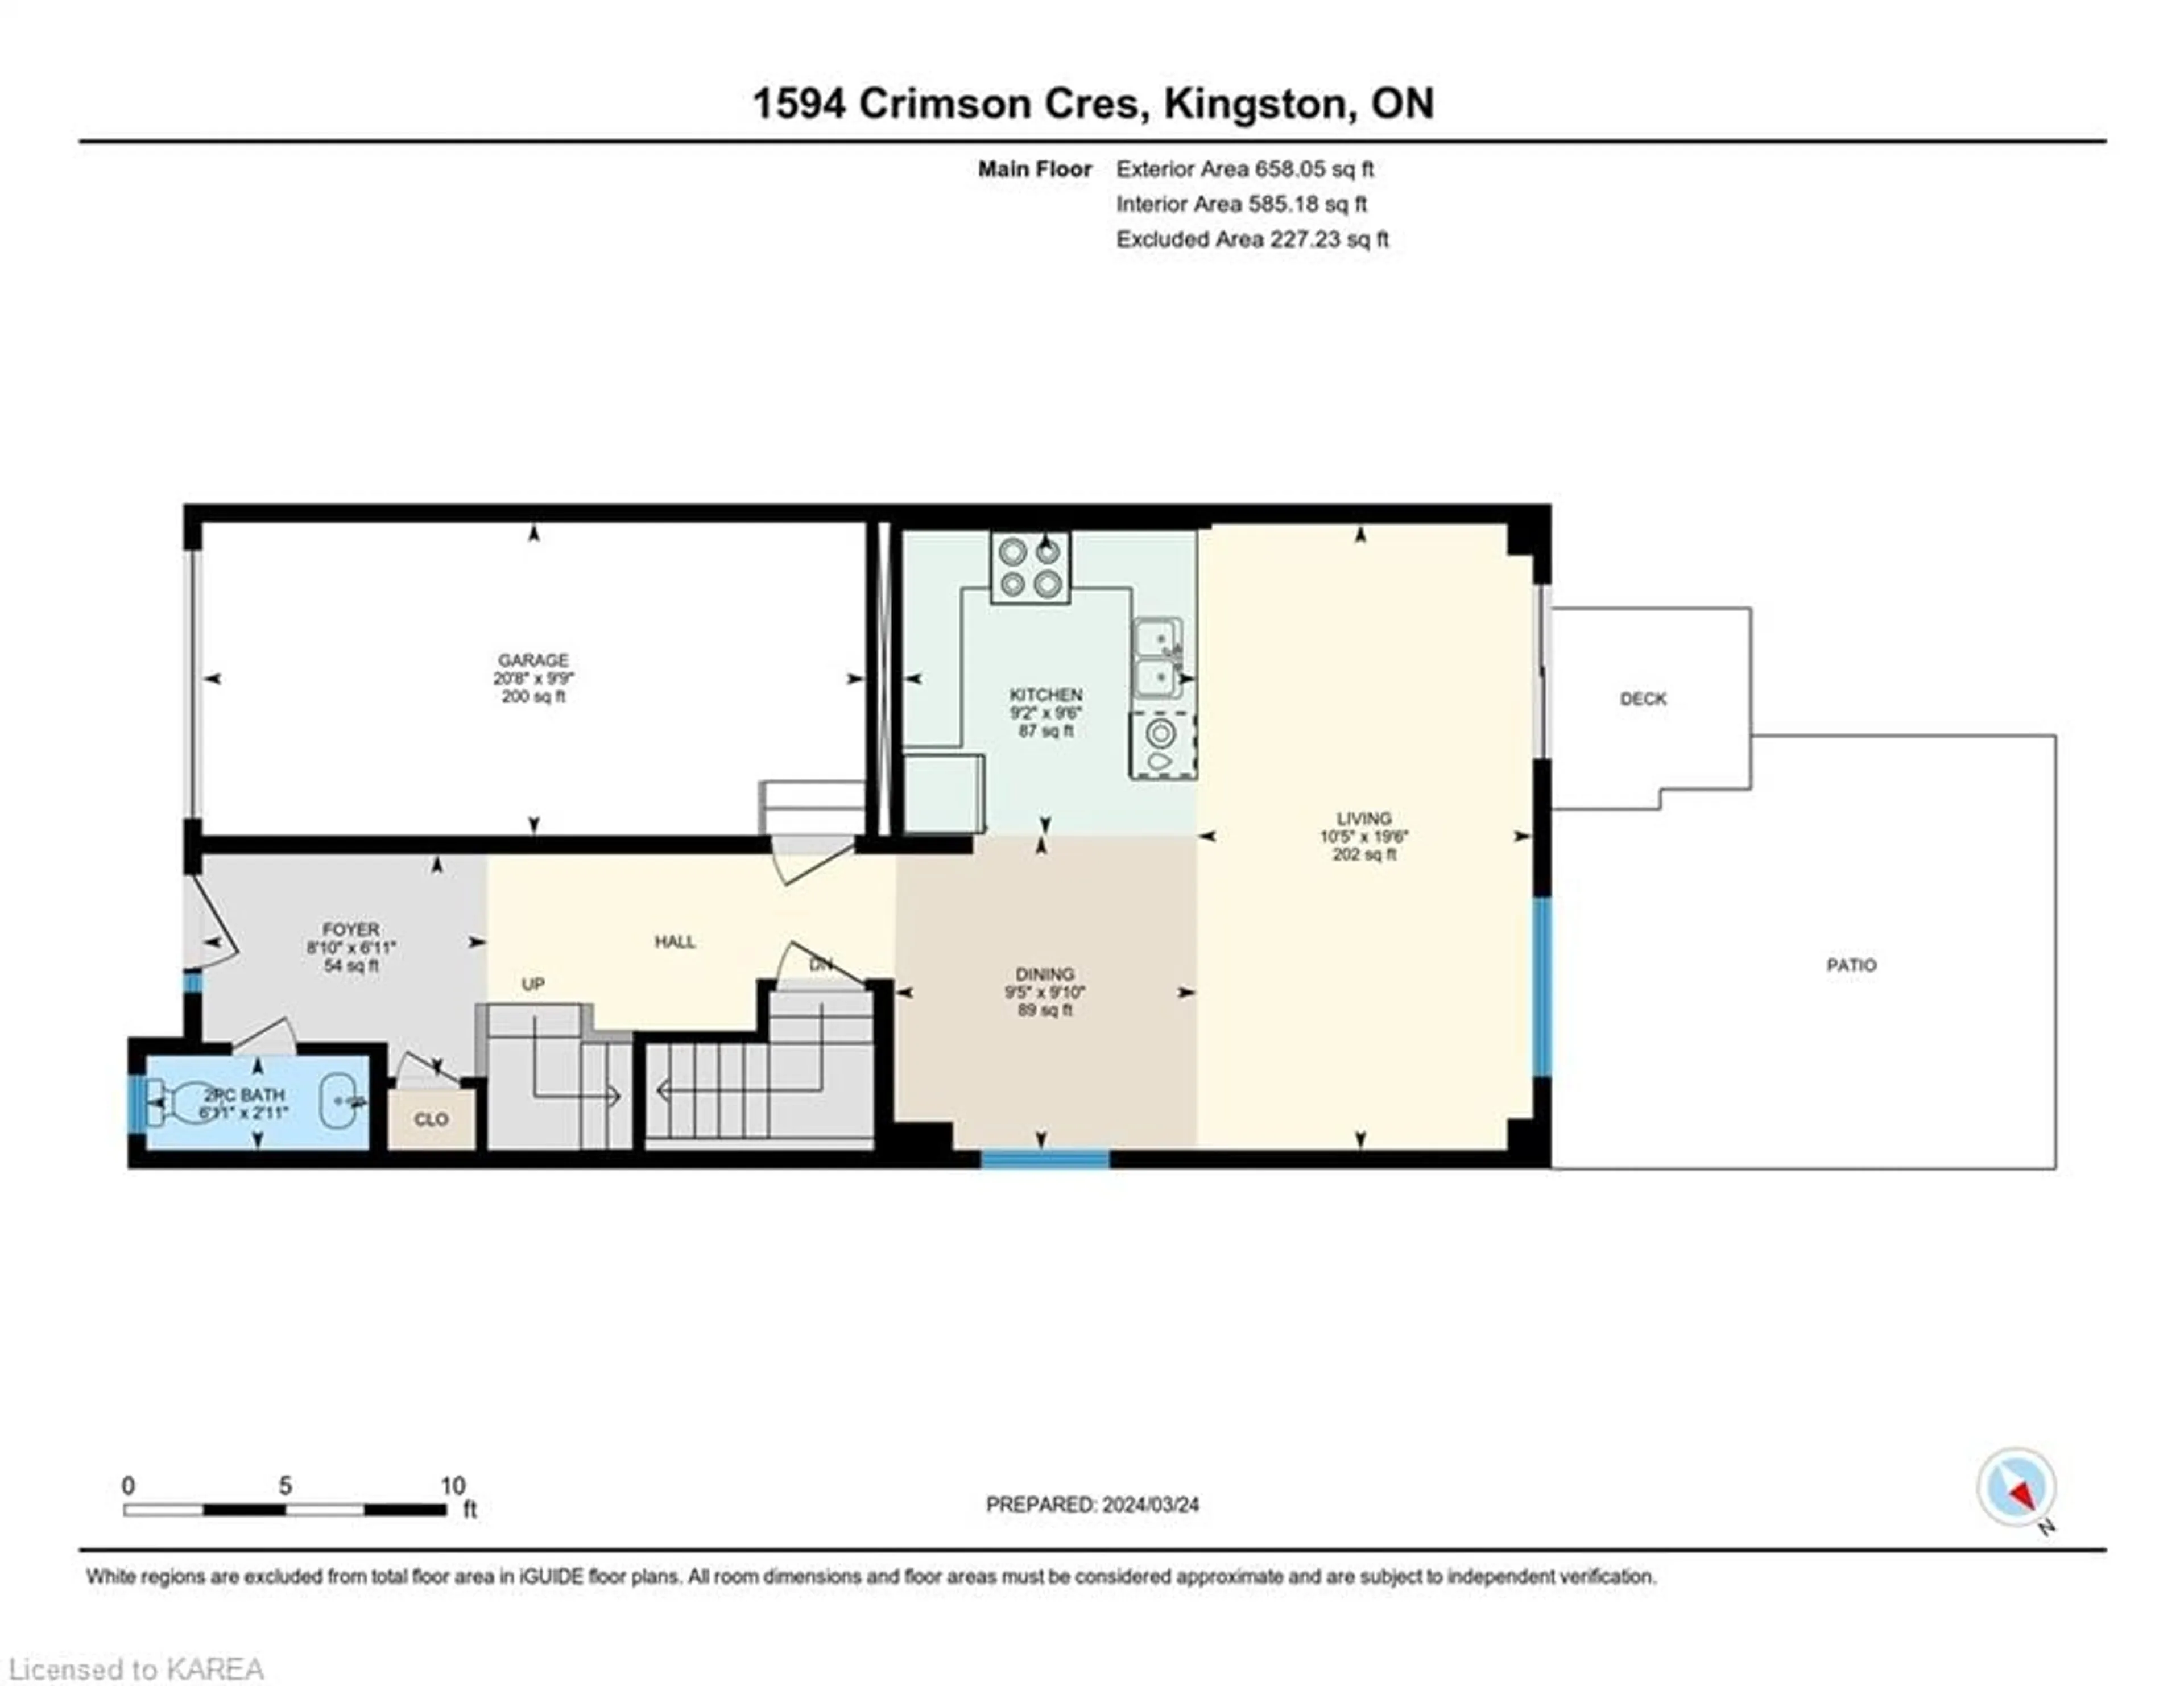 Floor plan for 1594 Crimson Cres, Kingston Ontario K7P 0J3